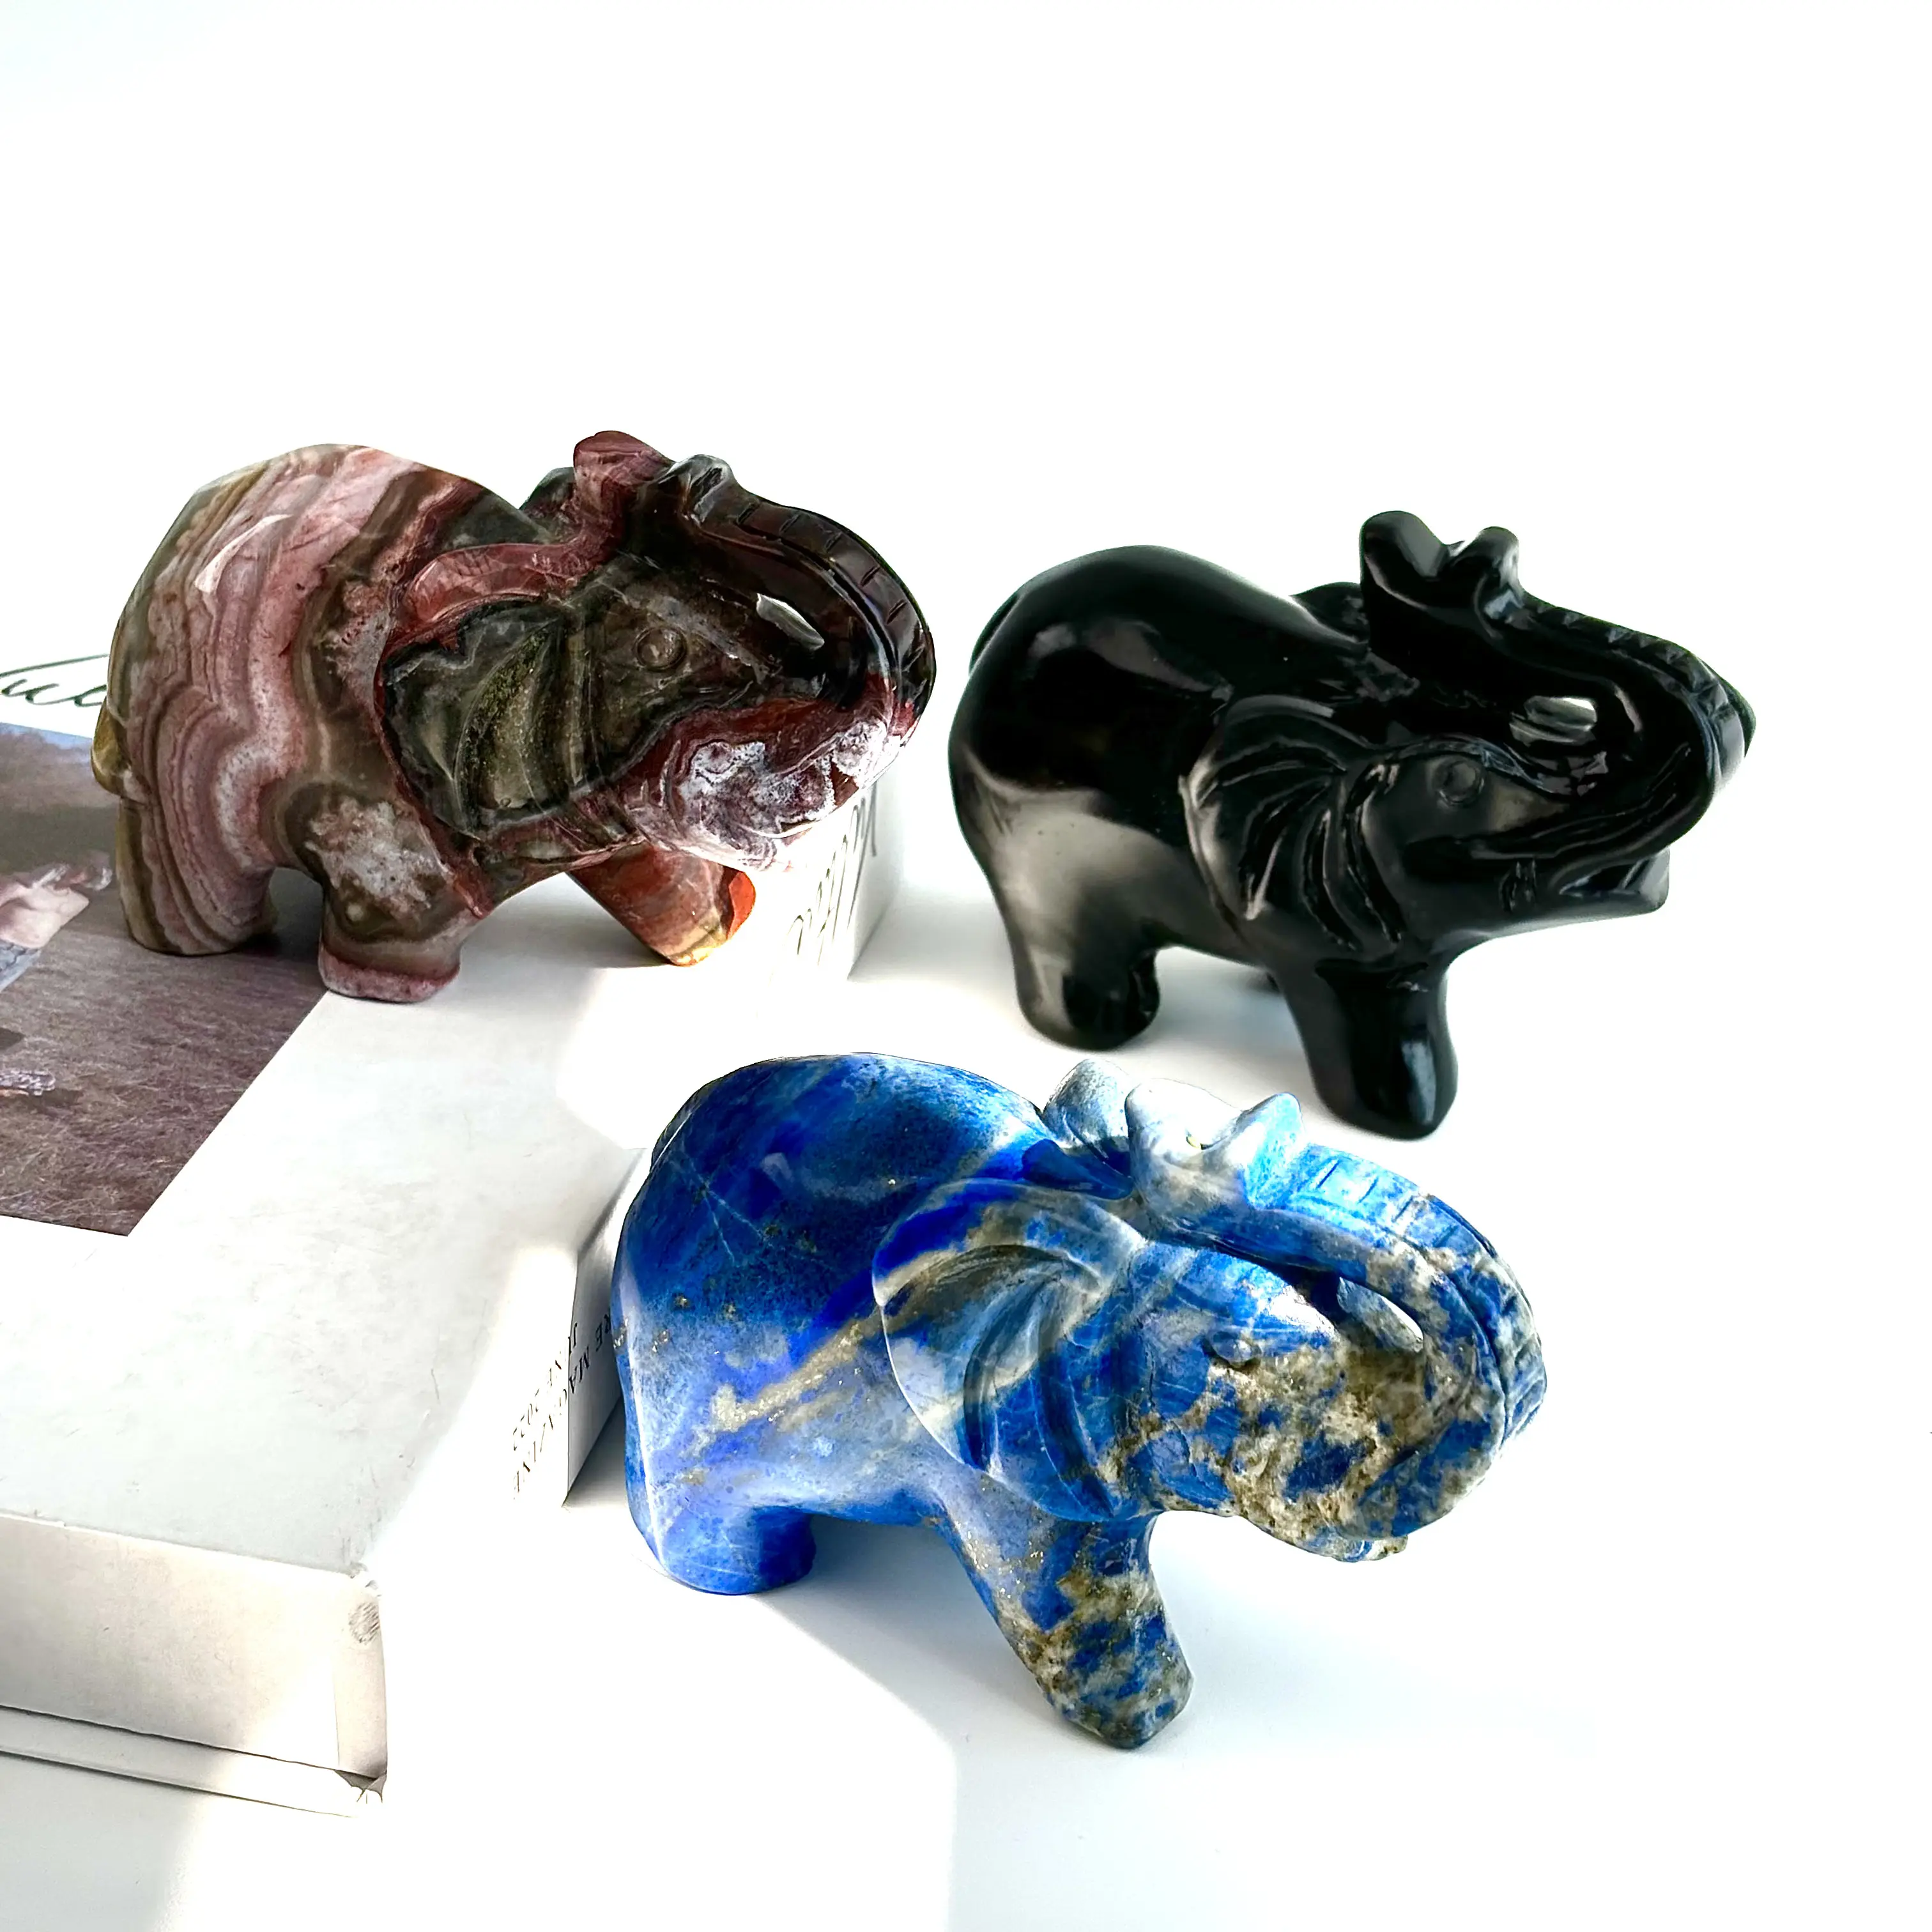 Venta caliente artesanía de calidad tallas de cristal de cuarzo al por mayor tallas de cristal elefante de piedra